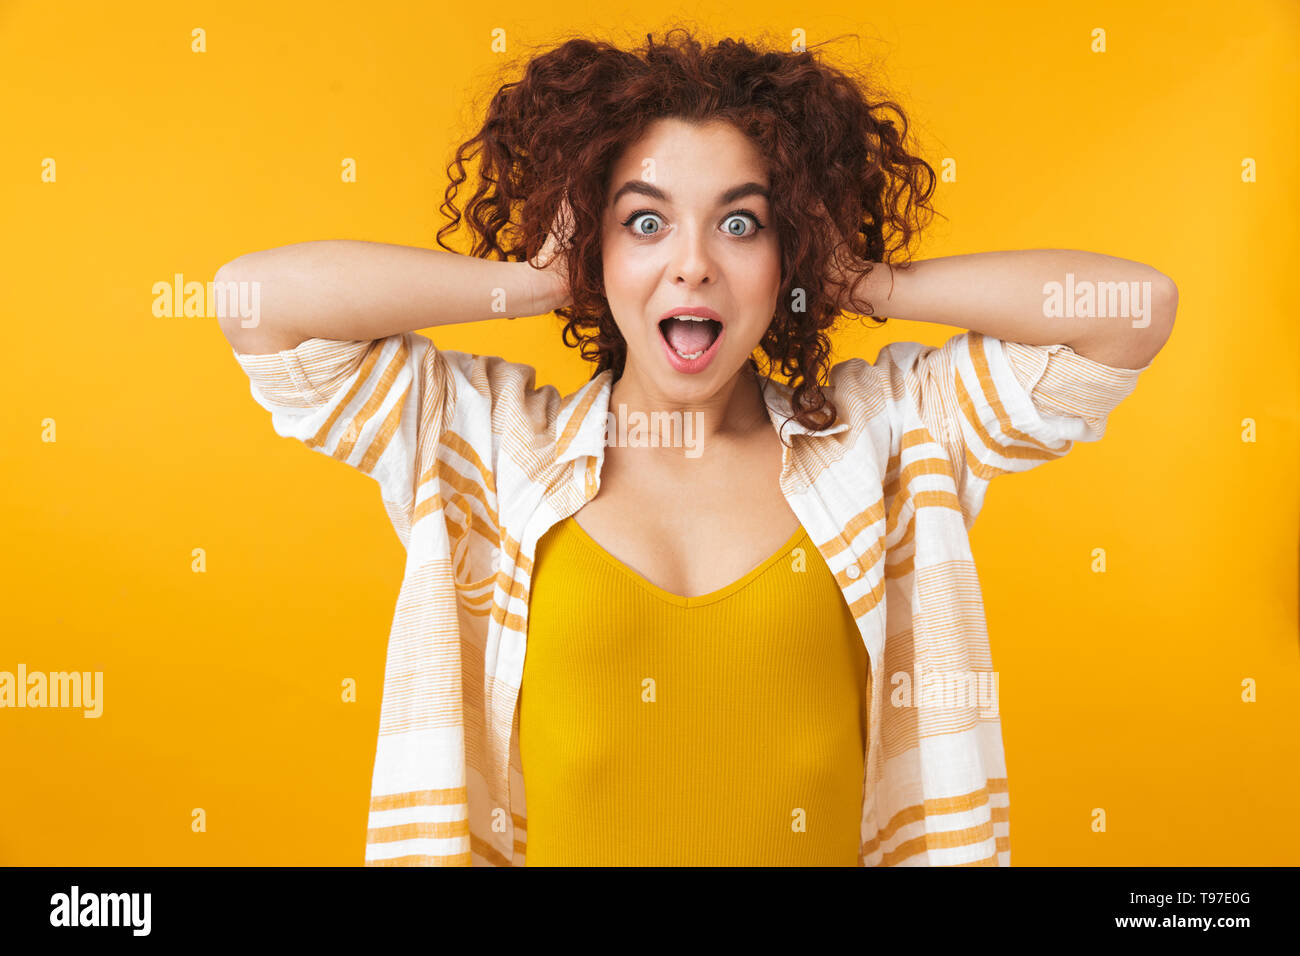 Image de femme excité 20s avec des cheveux bouclés standing and smiling, isolé sur fond jaune Banque D'Images